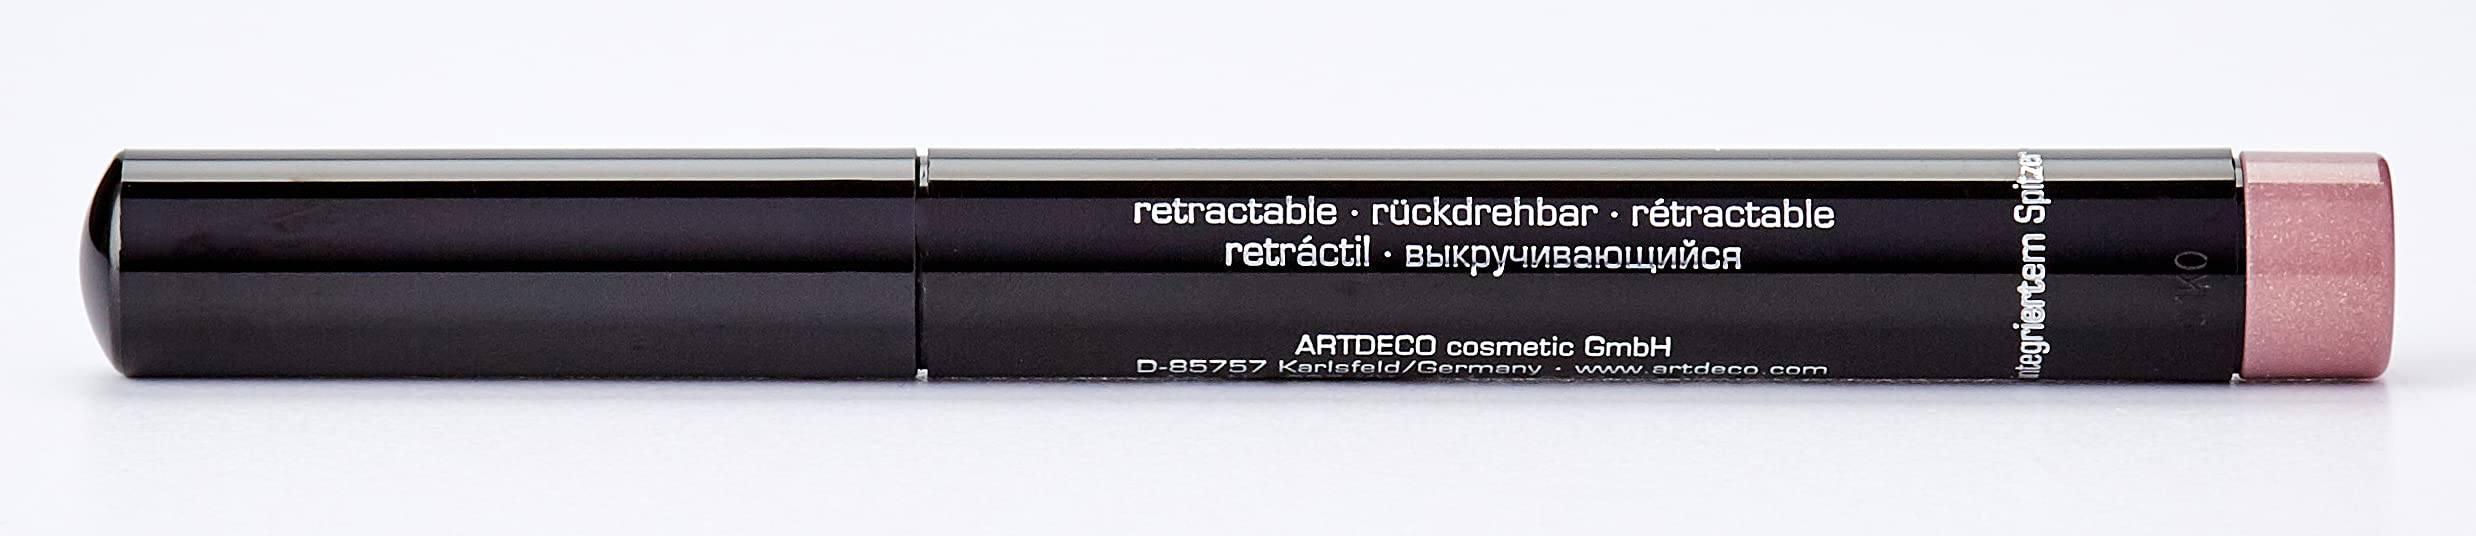 ARTDECO High Performance Eyeshadow Stylo - pisak 3 w 1: Cienie do powiek, eyeliner i kajal - 1 x 1,4 g